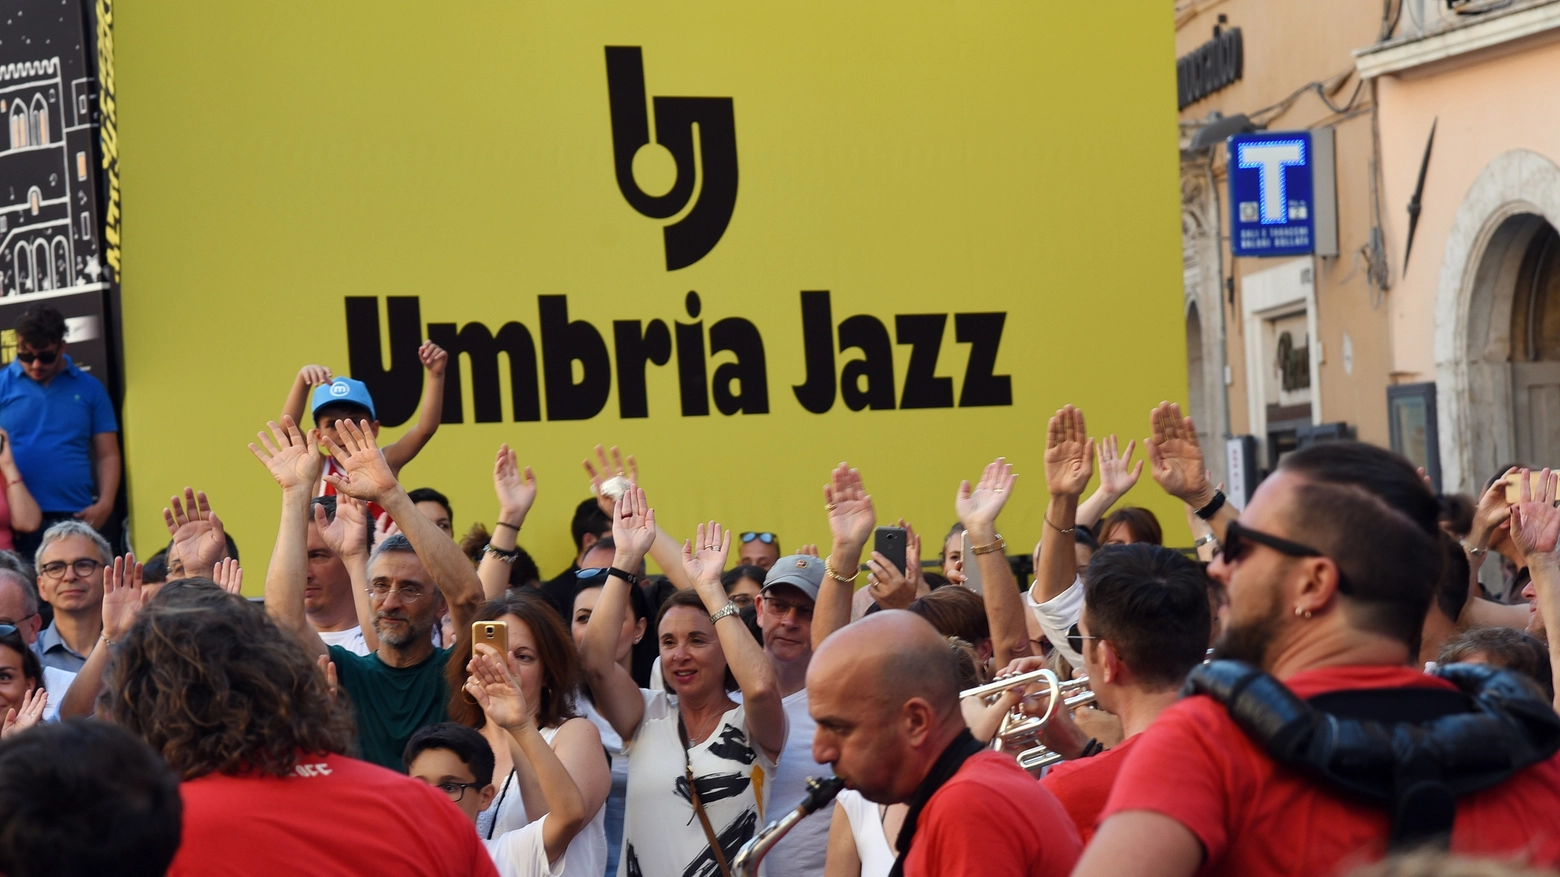 Umbria Jazz (Foto Crocchioni)